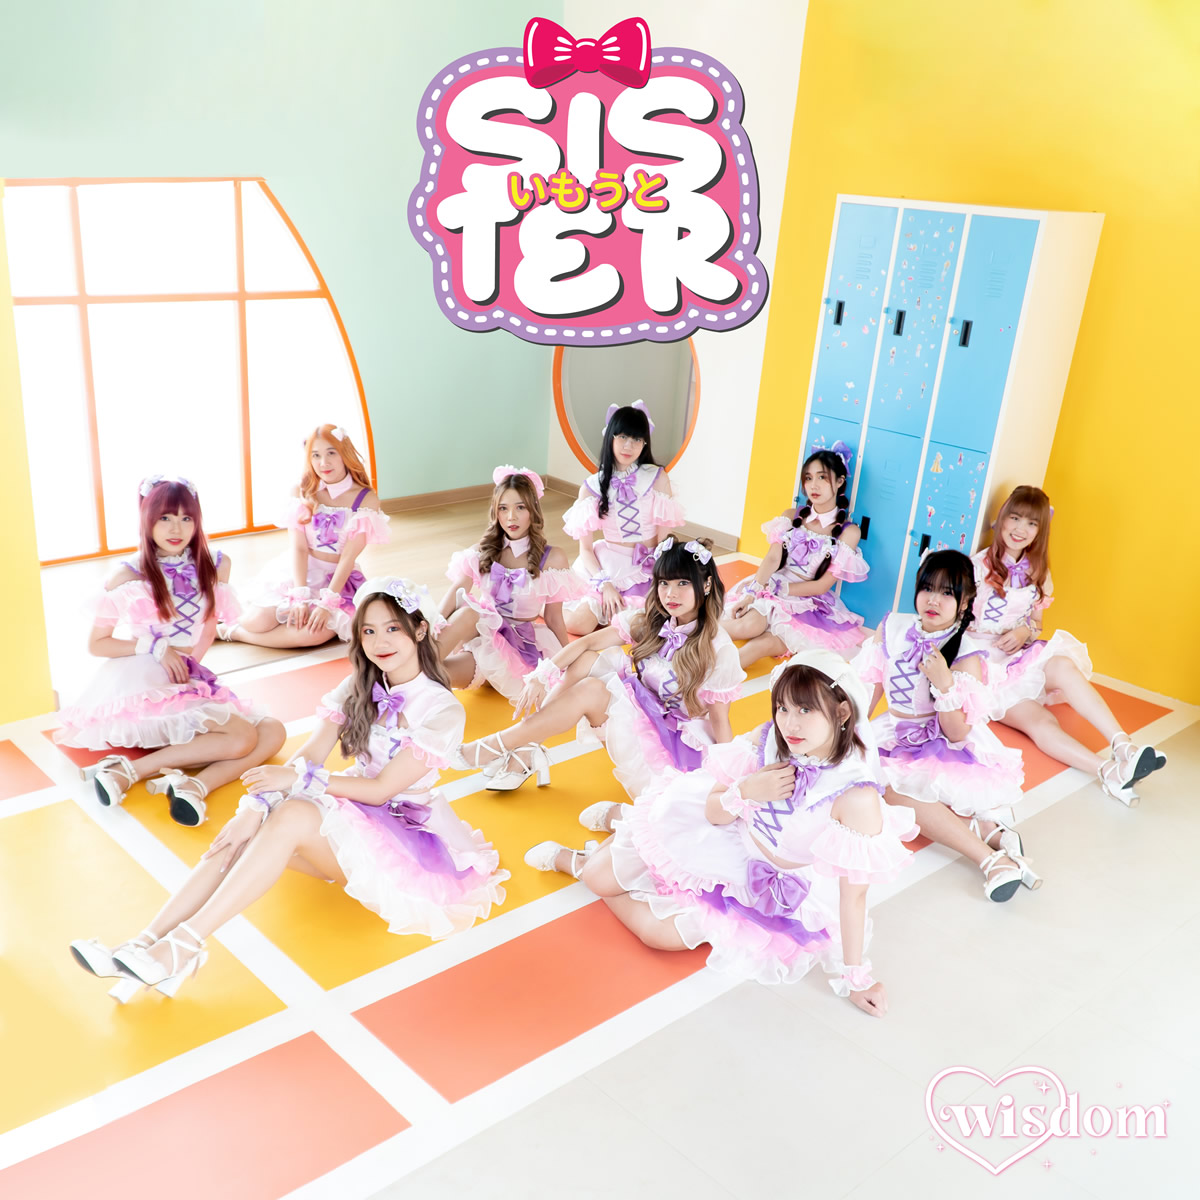 タイのアイドルグループWISDOM、最新シングル「SISTER」で明るさいっぱい甘さ全開のカムバック